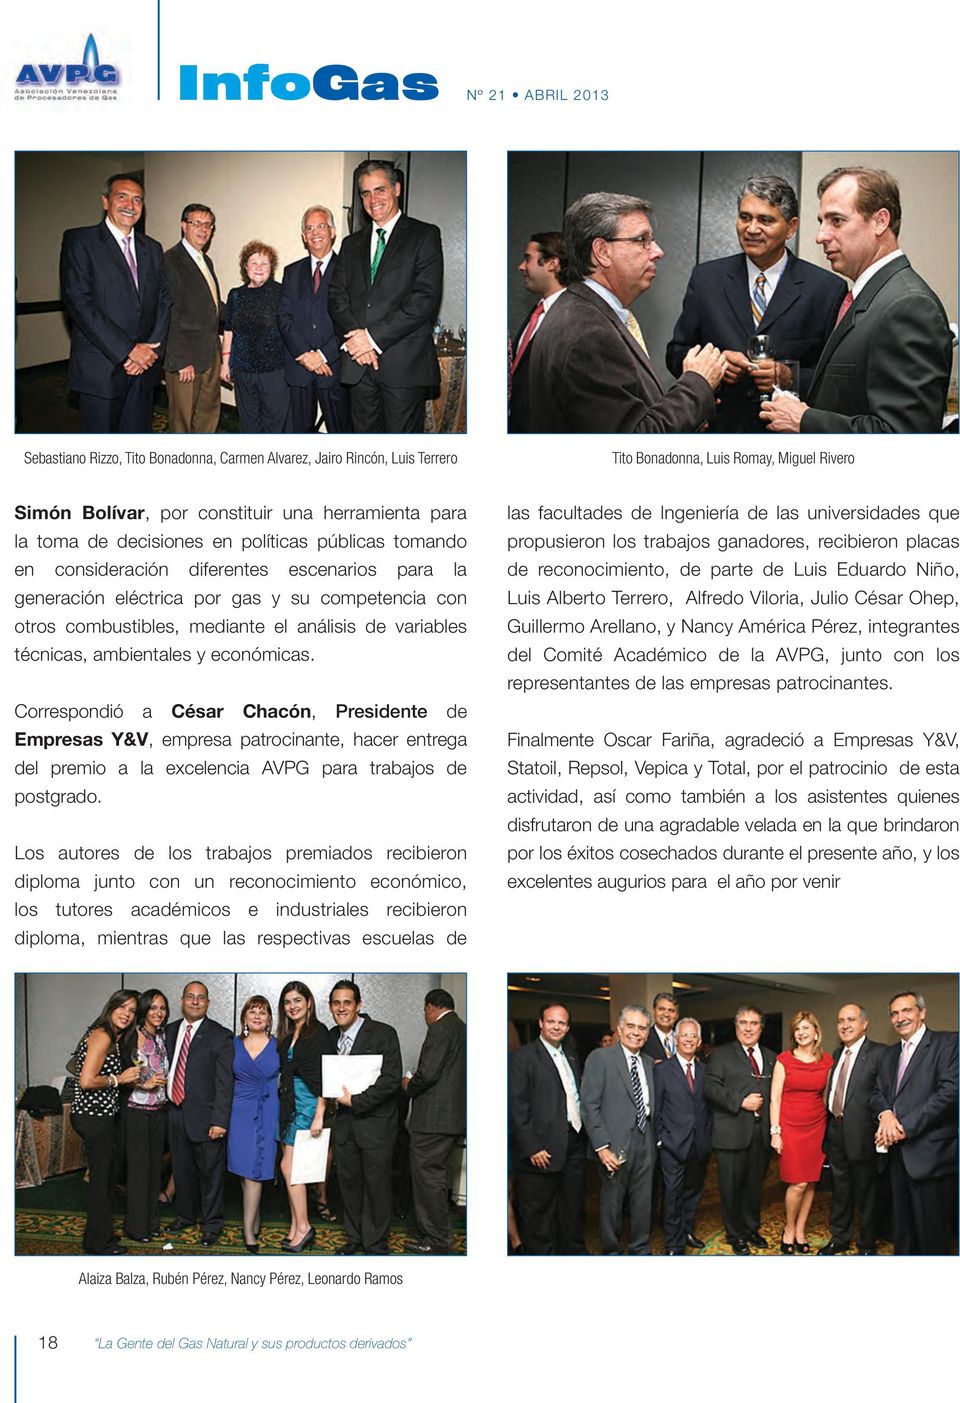 y económicas. Correspondió a César Chacón, Presidente de Empresas Y&V, empresa patrocinante, hacer entrega del premio a la excelencia AVPG para trabajos de postgrado.